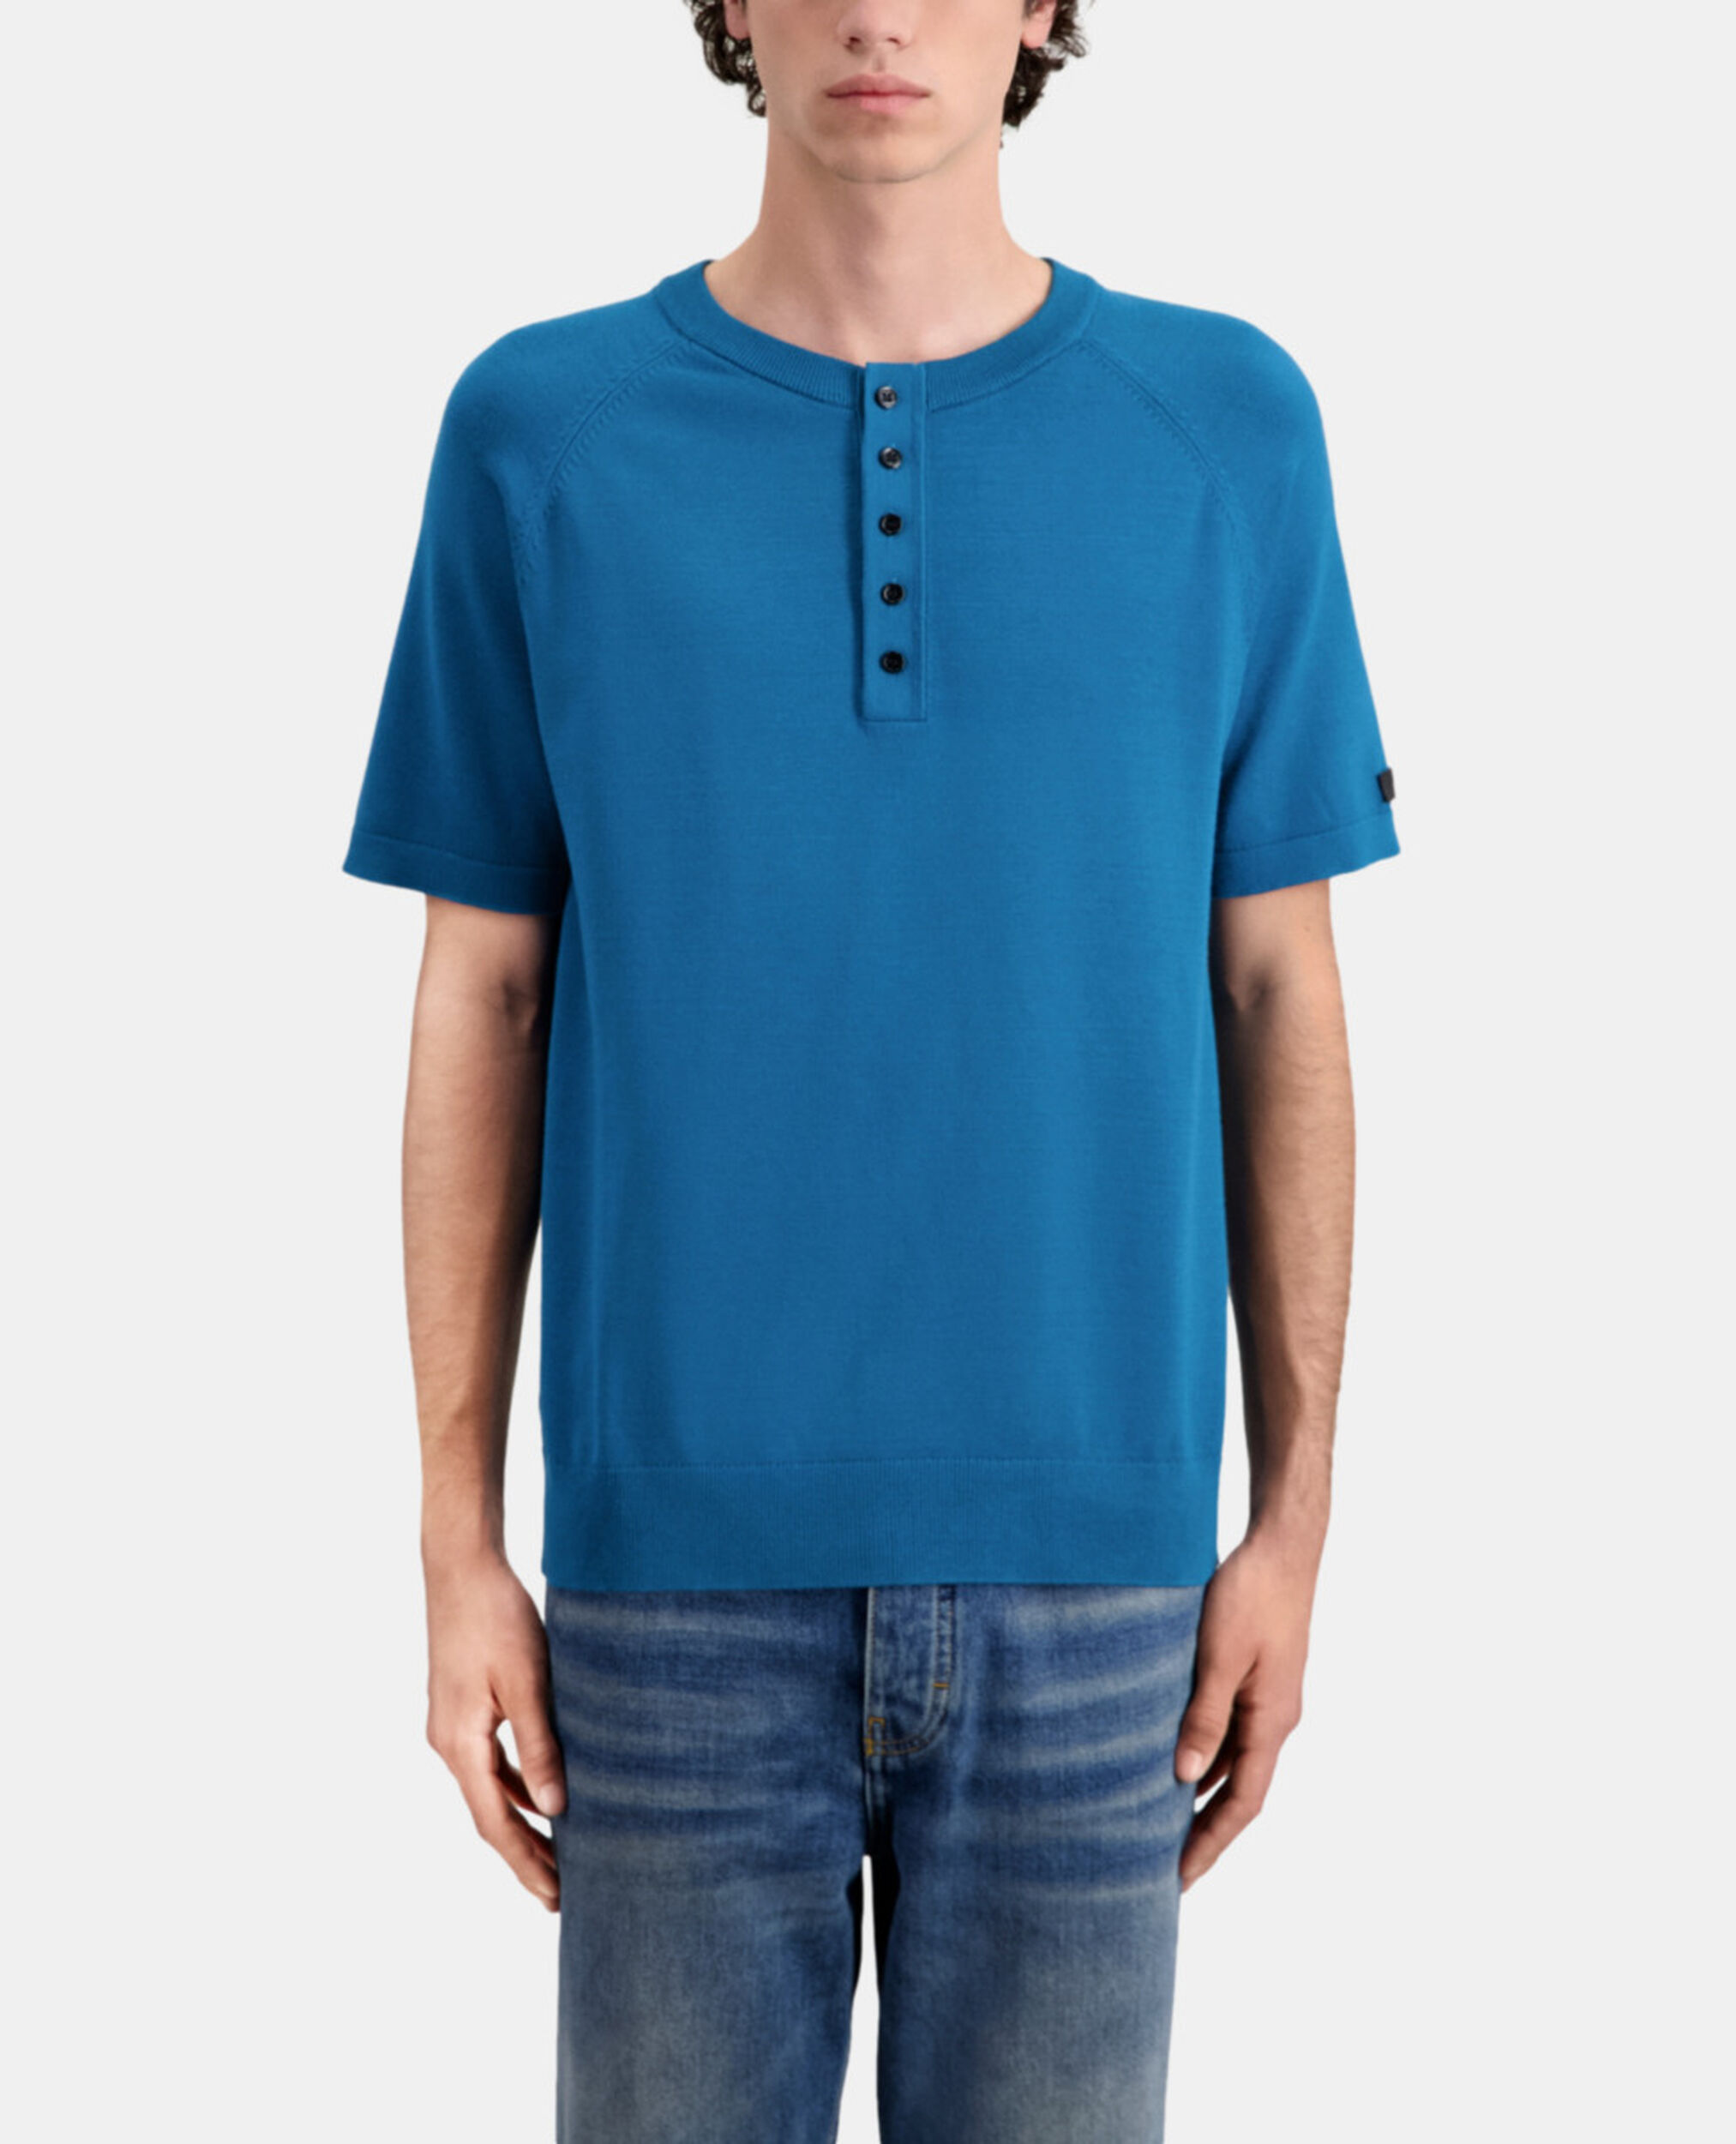 Blaues T-Shirt Herren aus Strick, MEDIUM BLUE, hi-res image number null